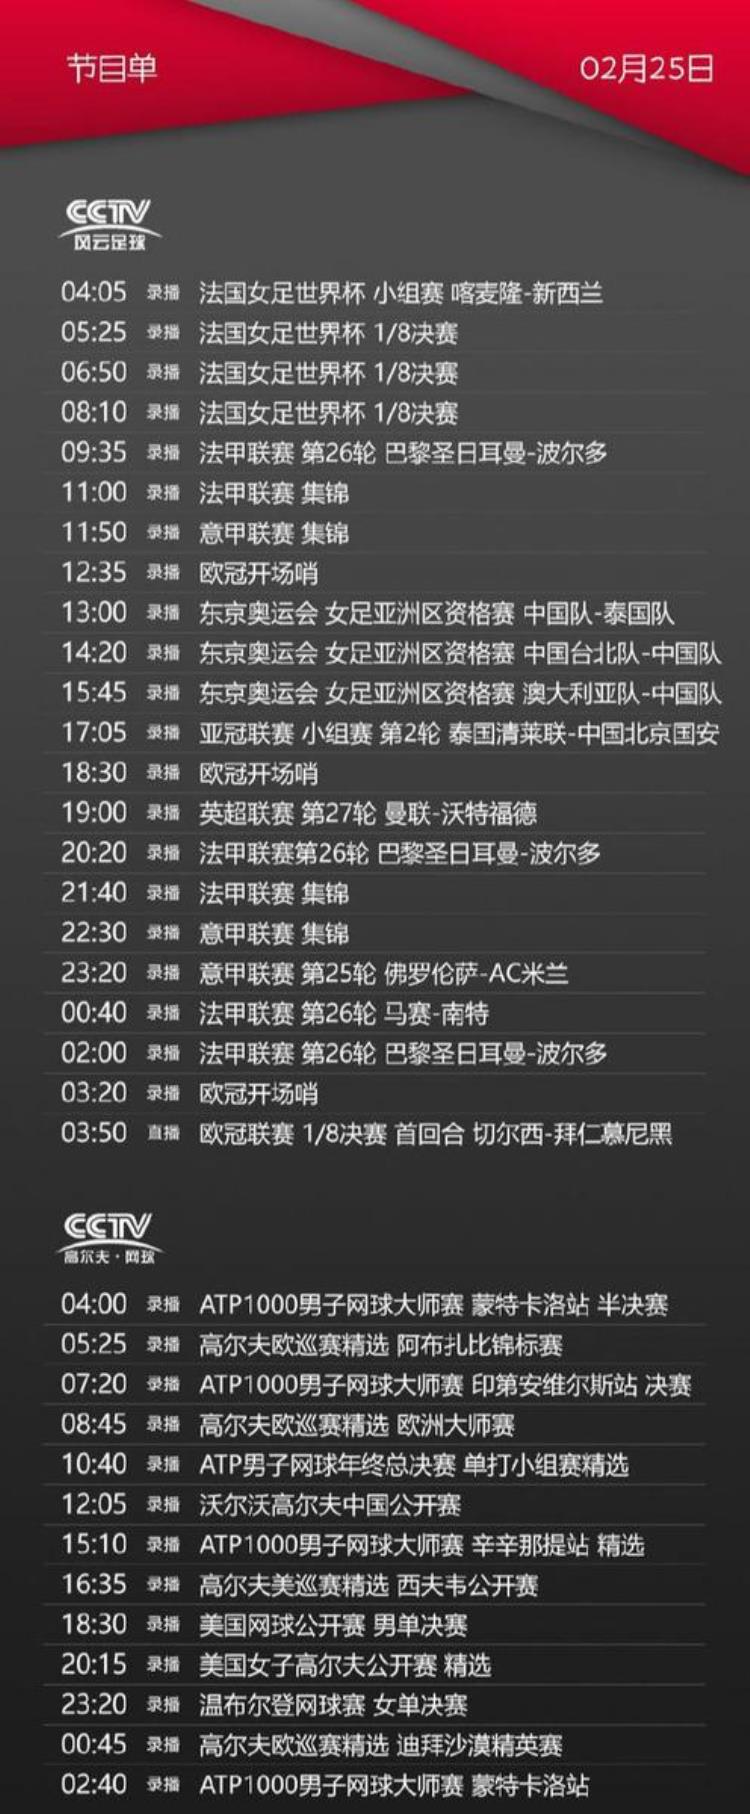 央视体育CCTV5/5今天节目单(2月25日)明天凌晨欧冠比赛